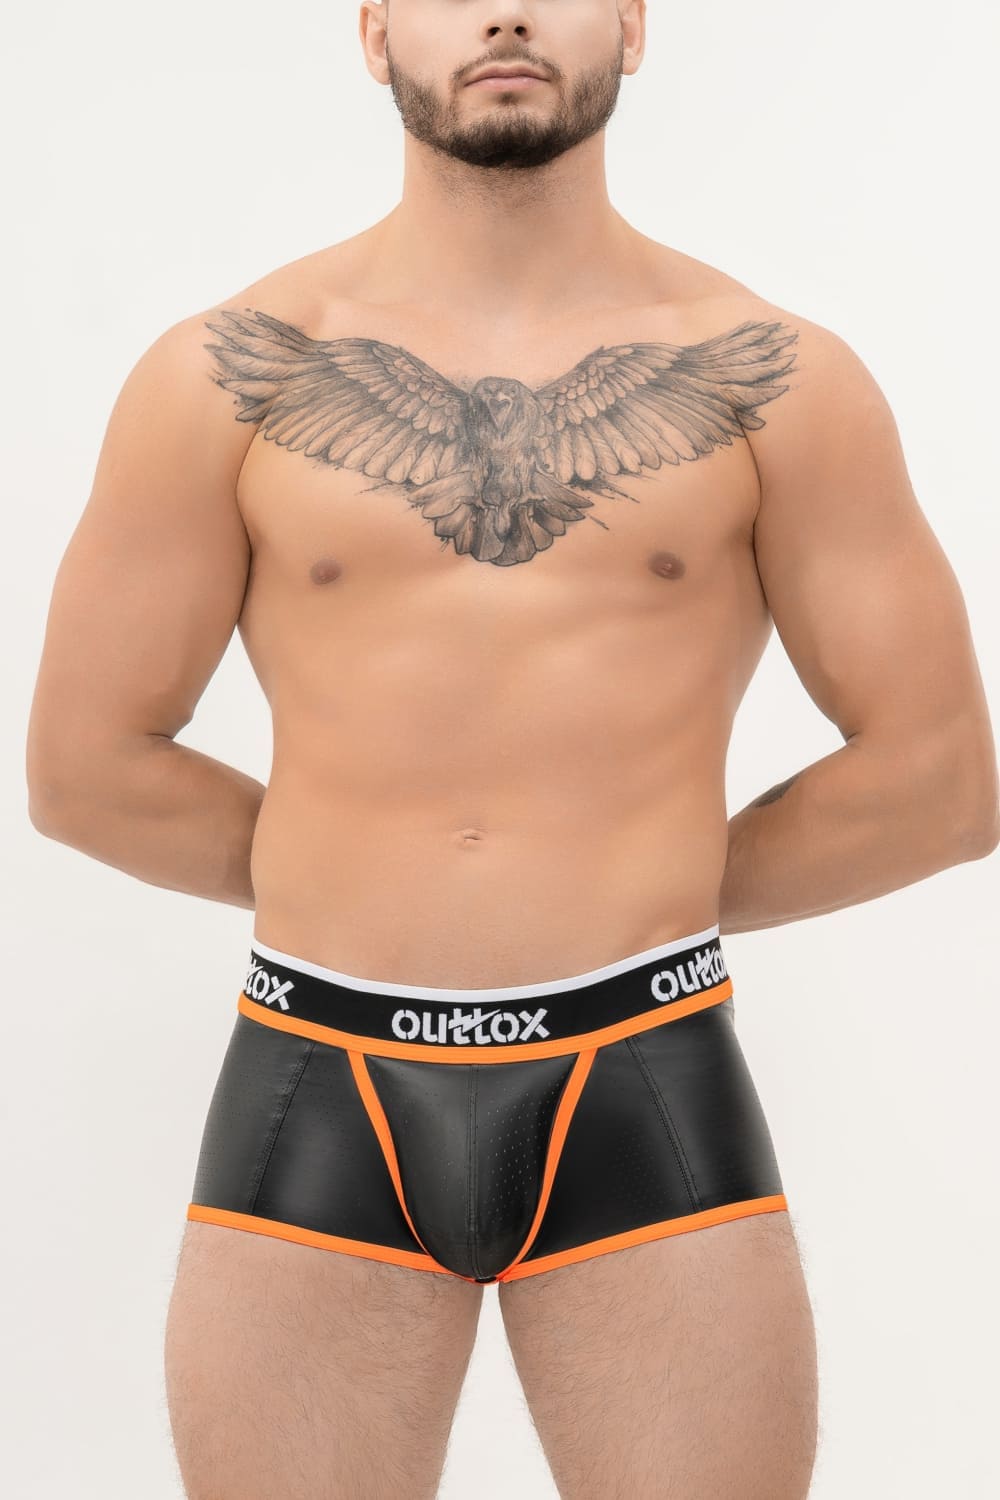 Outtox. Gewickelte Shorts mit Druckknopfverschluss. Schwarz+Orange